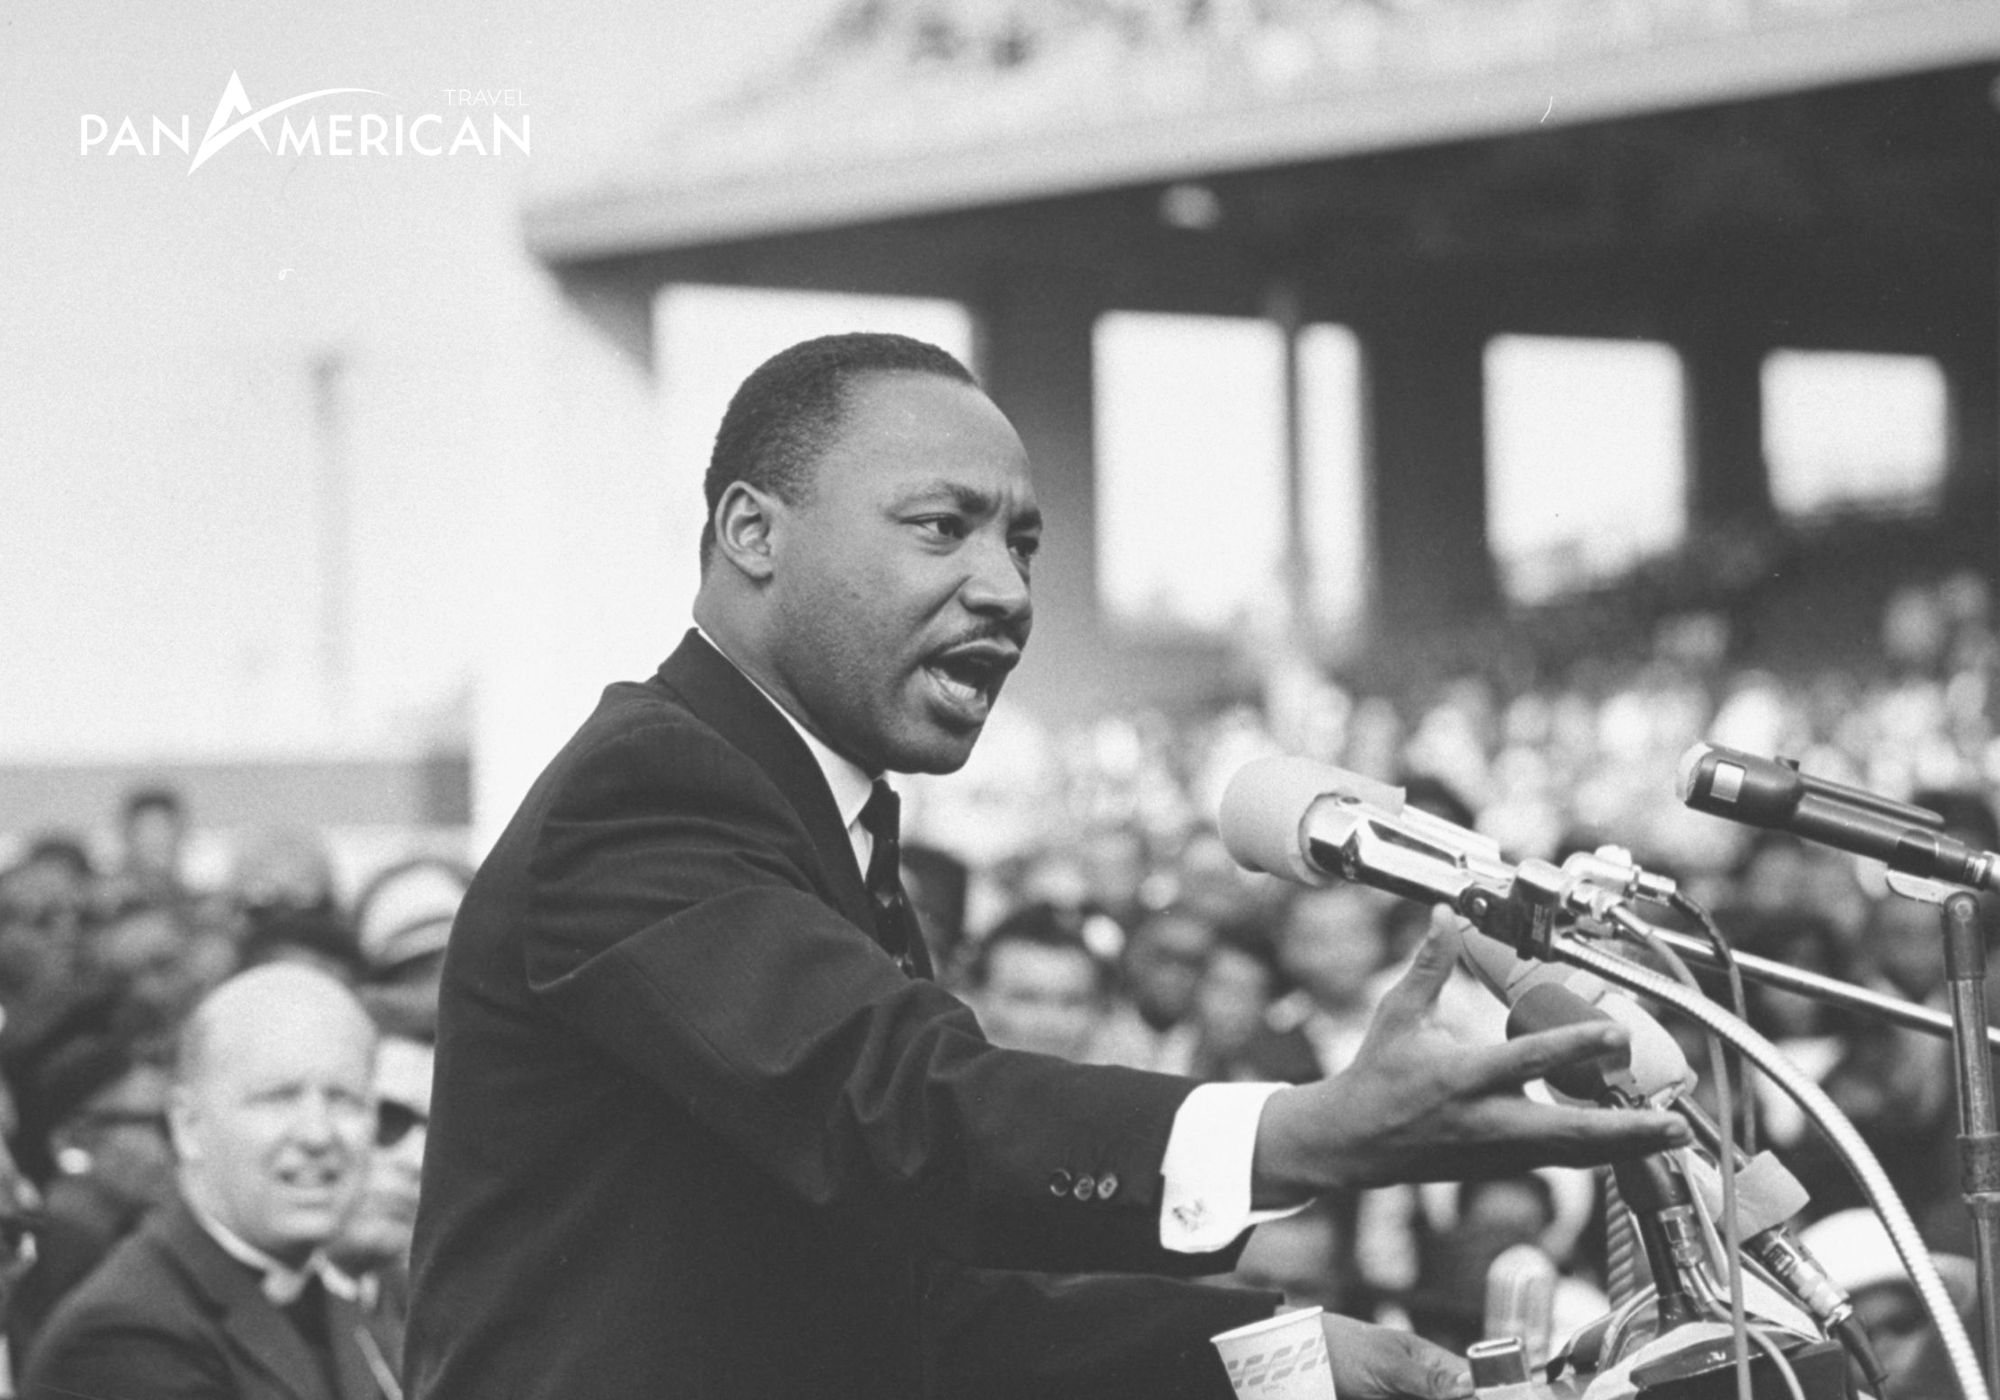 Martin Luther King Jr với bài diễn văn nổi tiếng “Tôi có một ước mơ" - “I have a dream" tại thủ đô Washington D.C